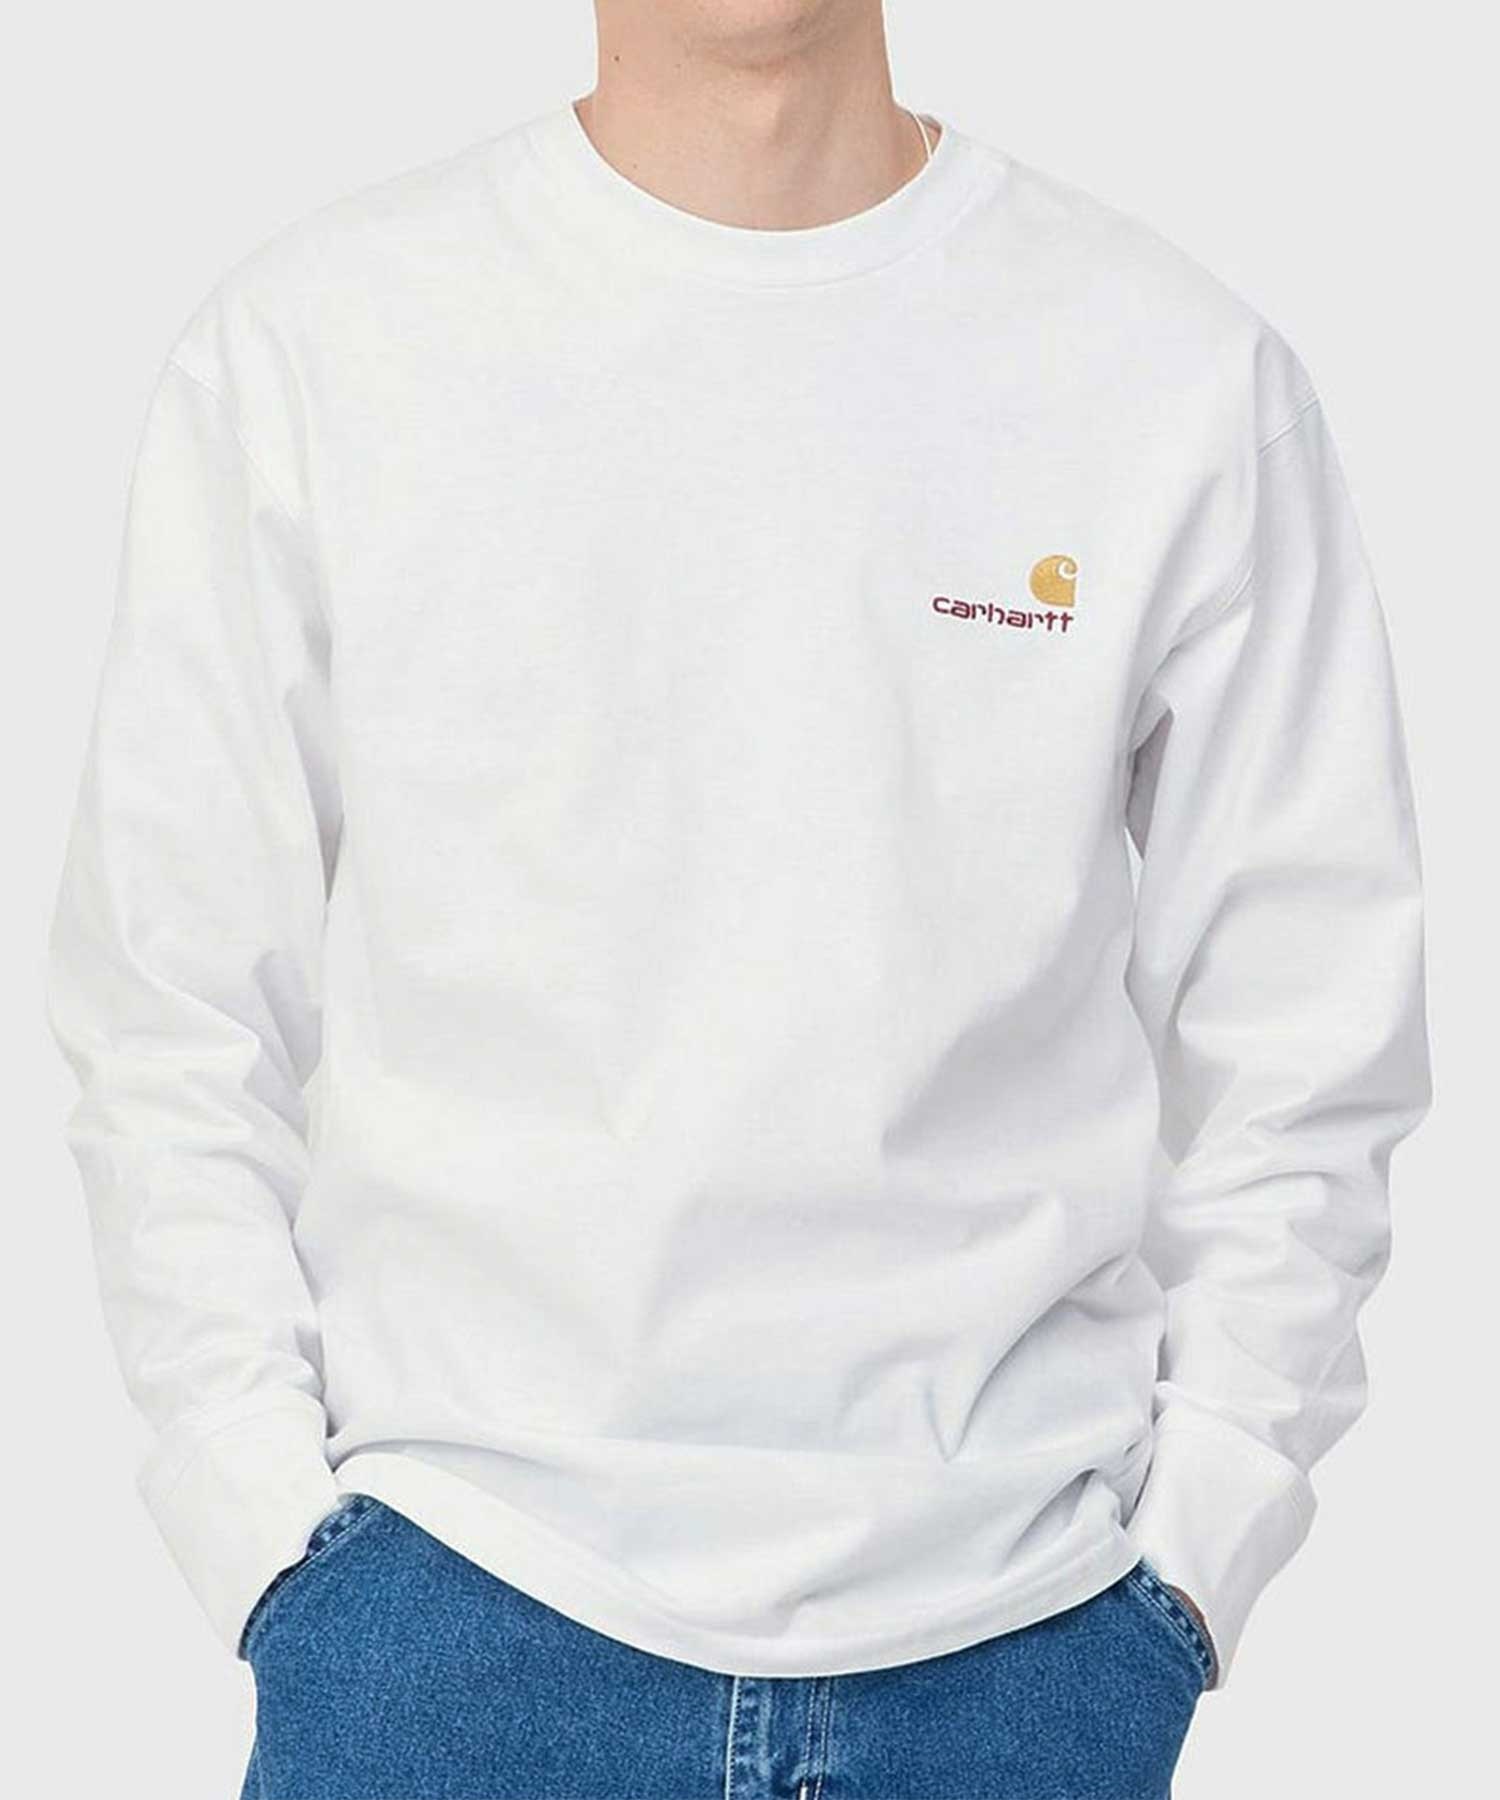 Carhartt WIP/カーハートダブリューアイピー メンズ 長袖 Tシャツ ルーズシルエット ロゴ刺繍 I029955(WHITE-S)